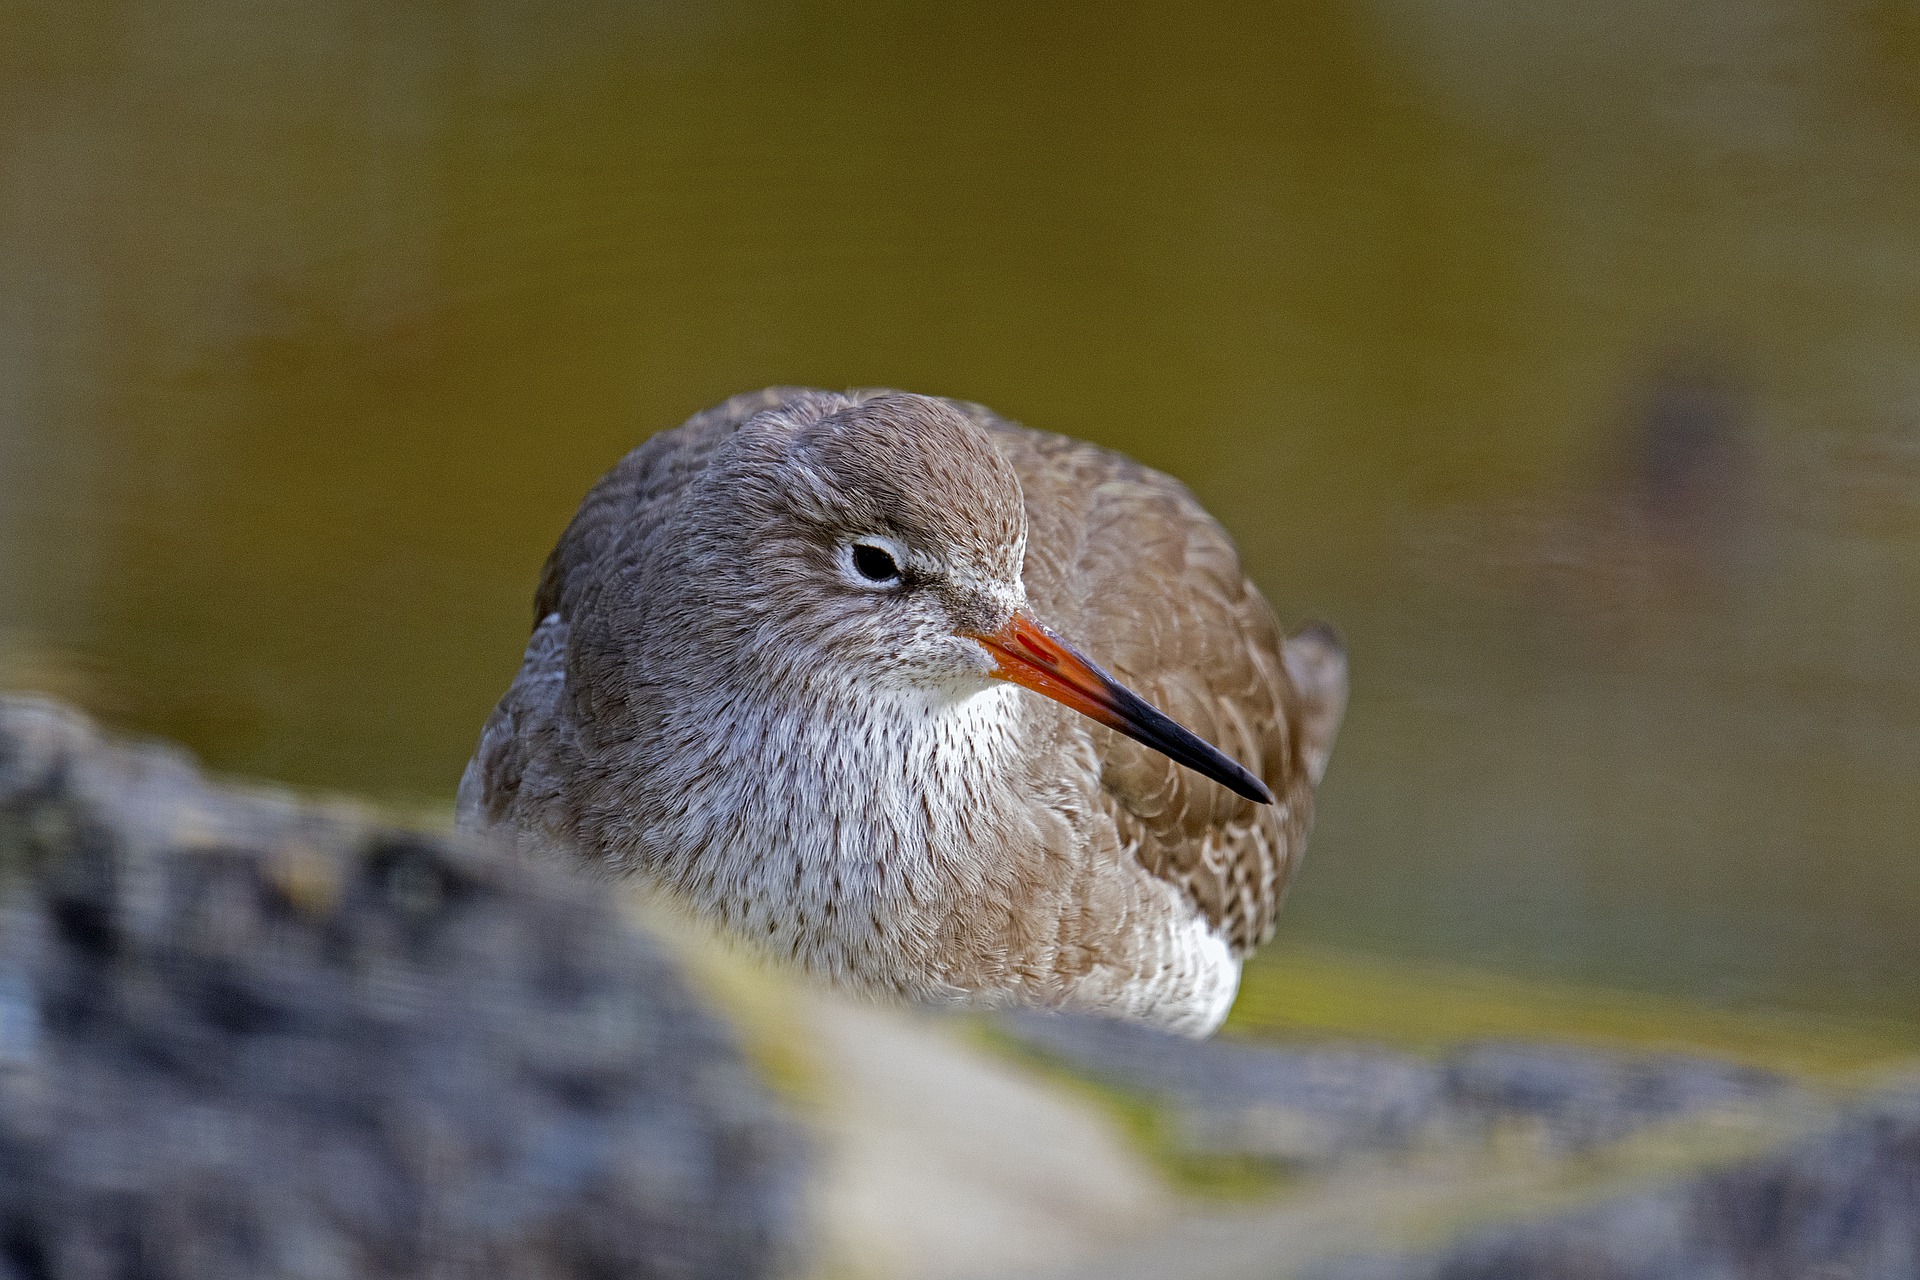 A close-up of a redshank bird